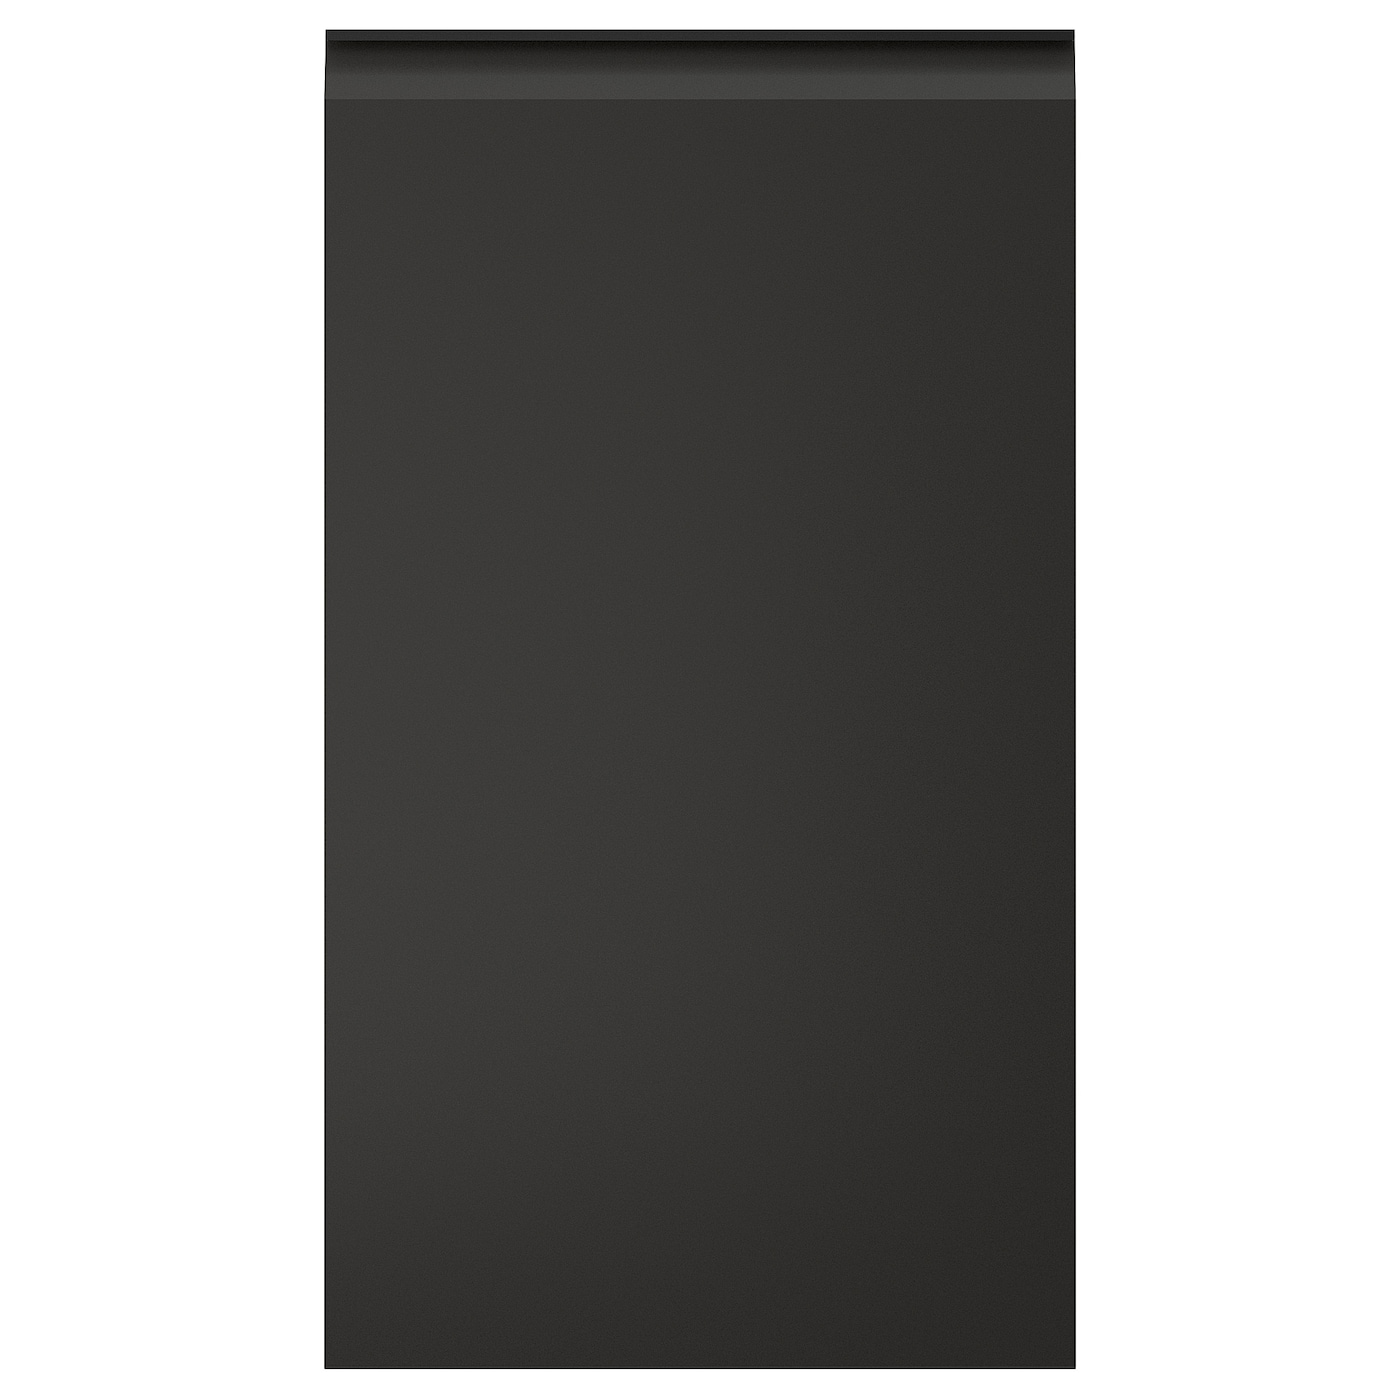 Передняя панель для посудомоечной машины - UPPLÖV /UPPLОV  IKEA/ УППЛЁВ  ИКЕА, 45х80 см, черный